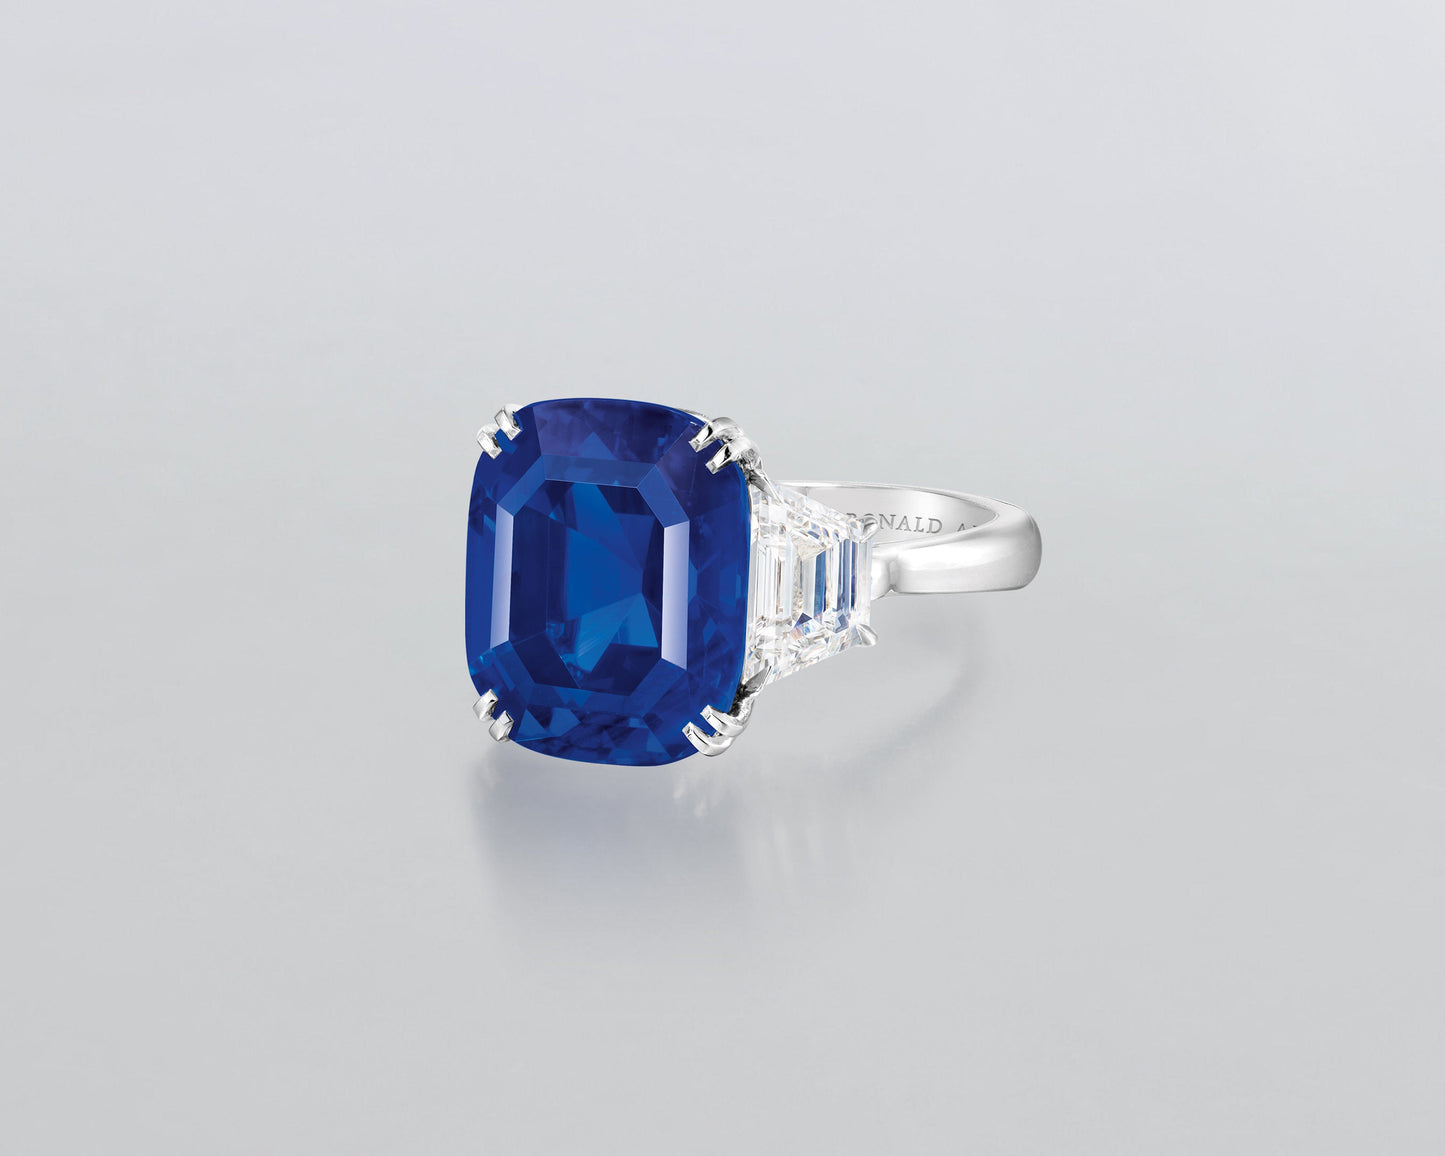 12.56 carat Cushion Cut Kashmir Sapphire Ring